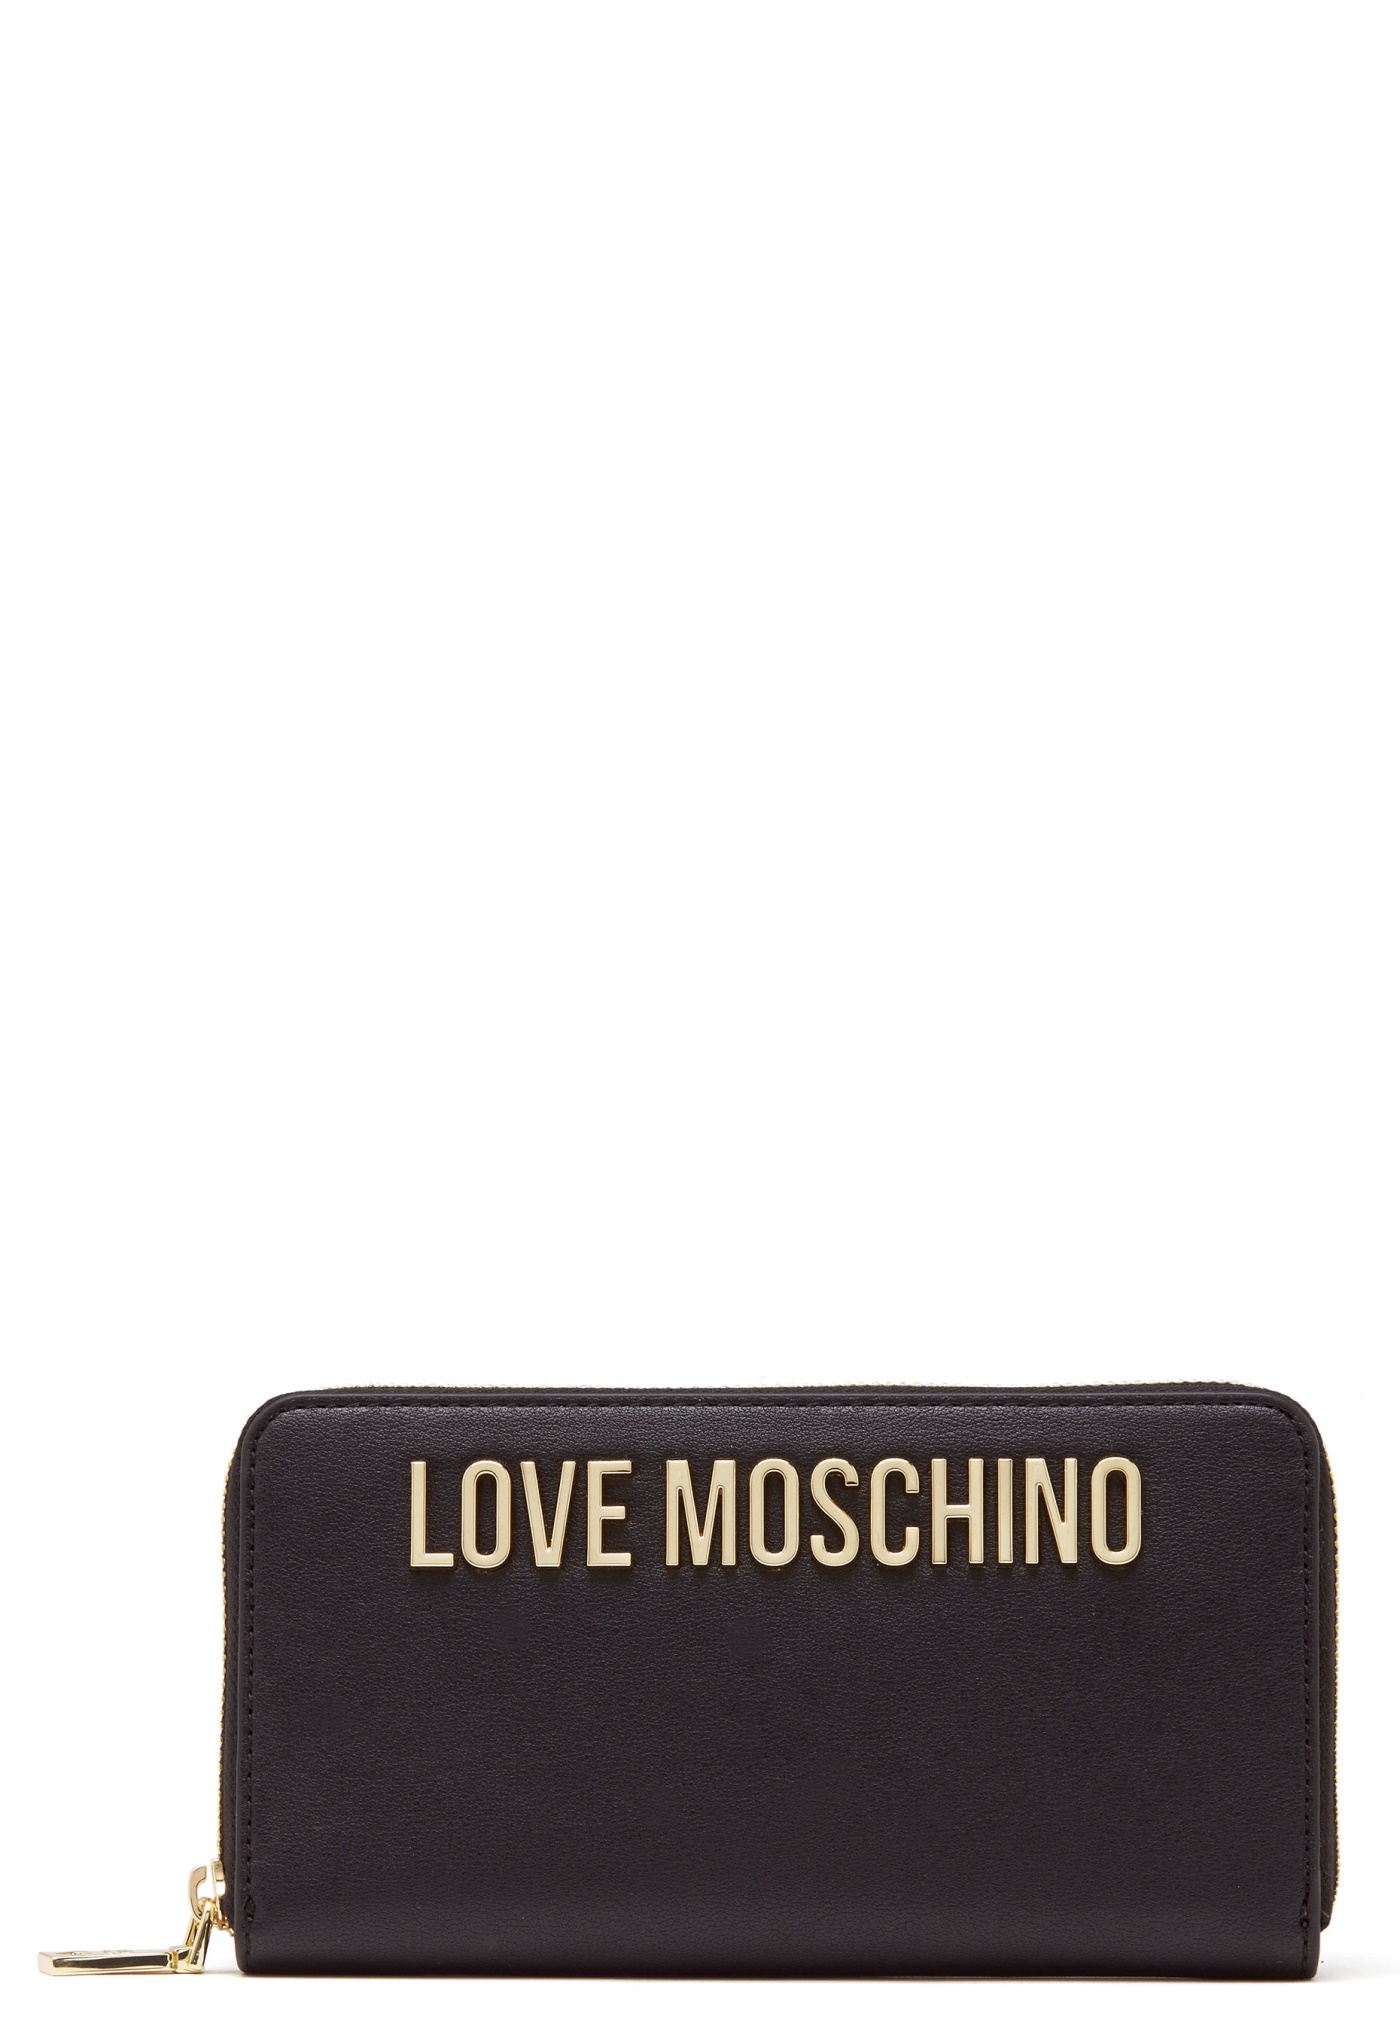 Love Moschino Wallet Black - Bubbleroom